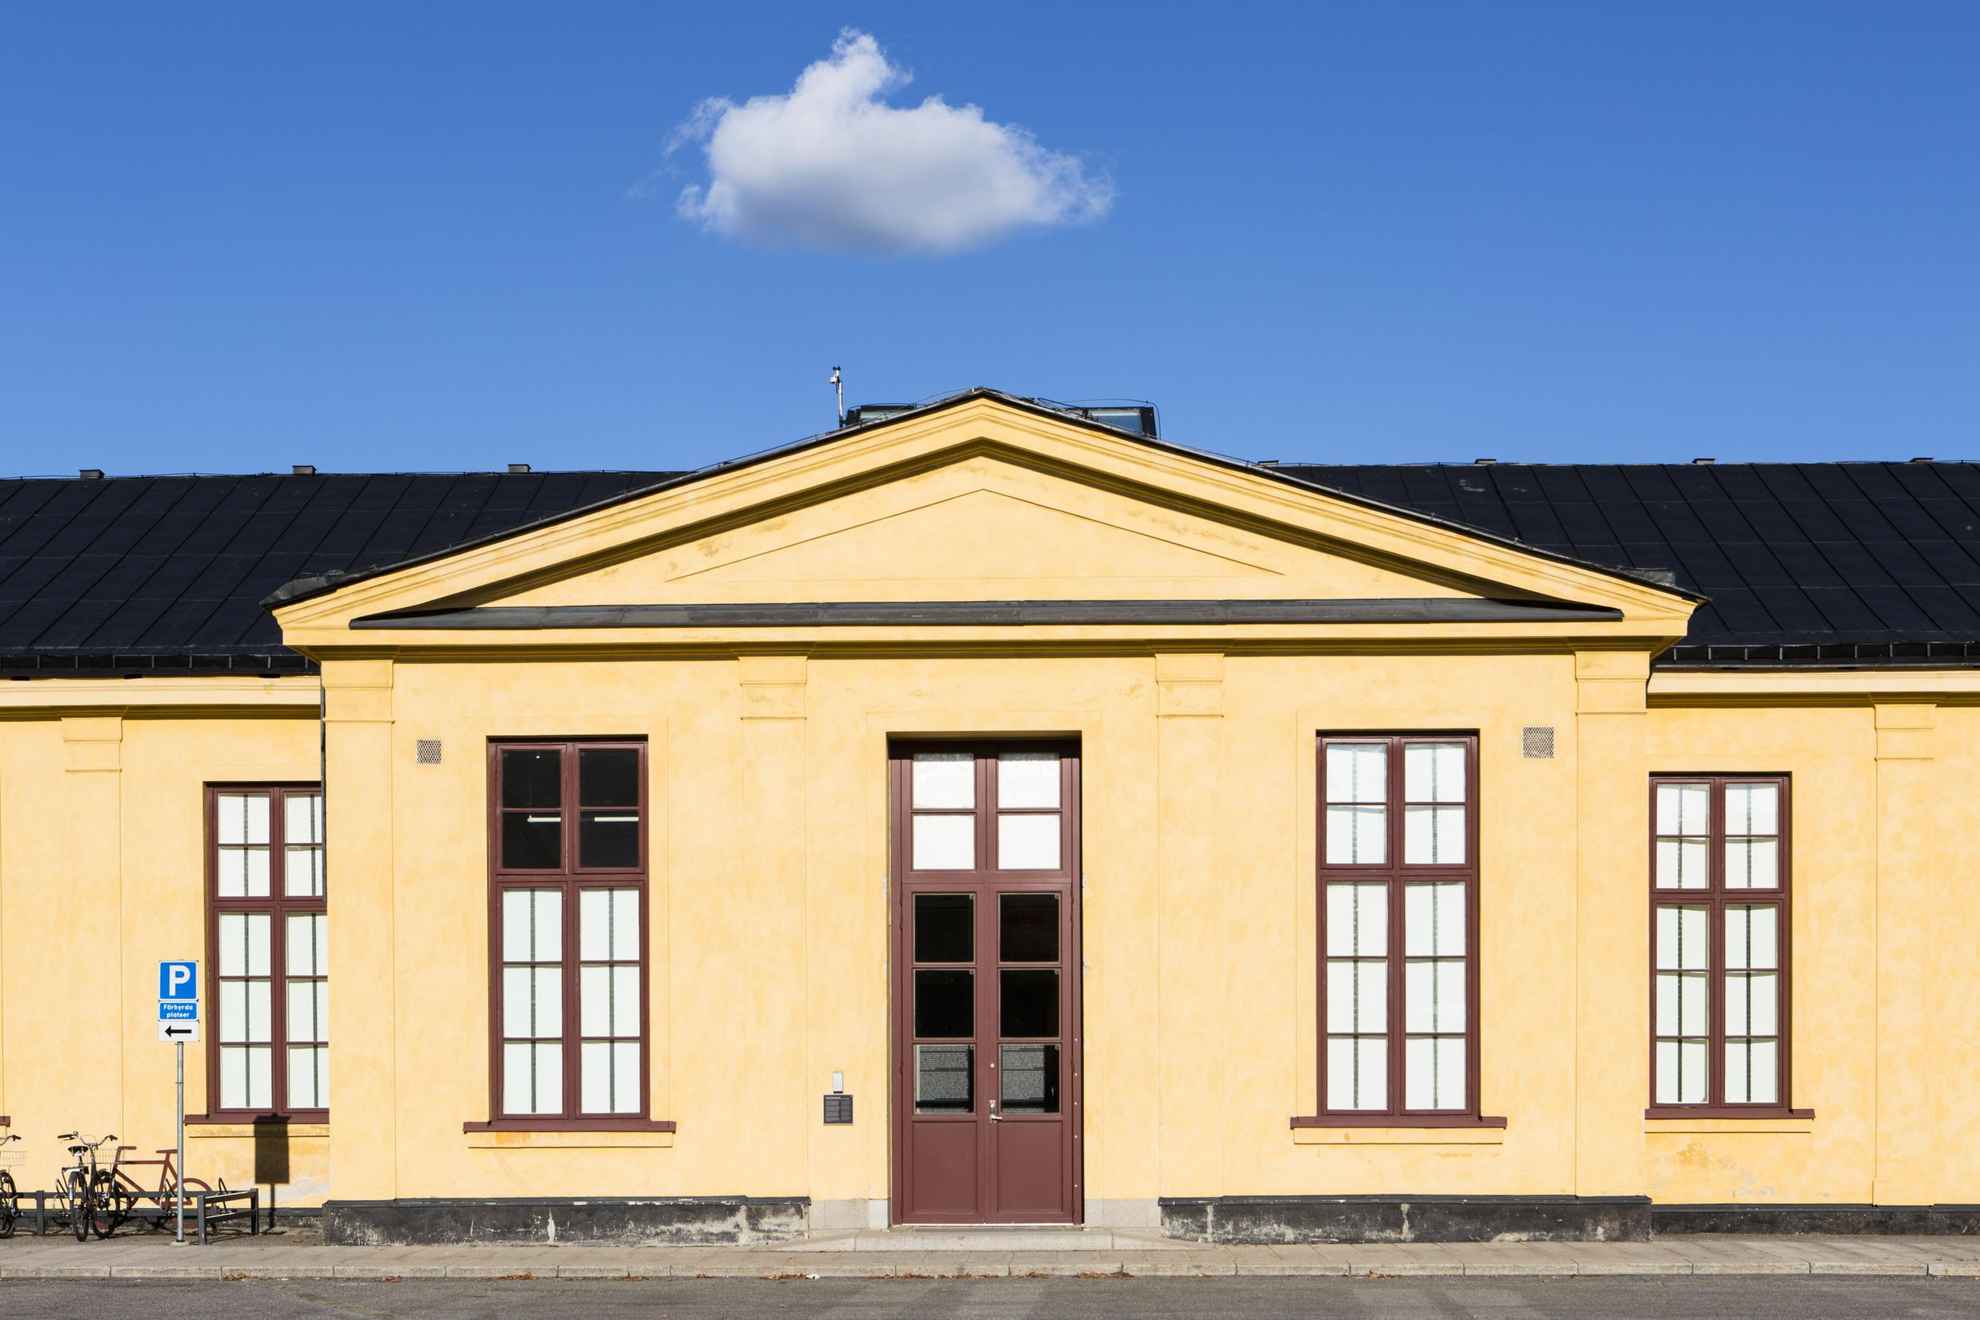 Vue sur l'extérieur d'un bâtiment jaune clair avec des fenêtres à meneaux de couleur bordeaux et une porte à double battant.